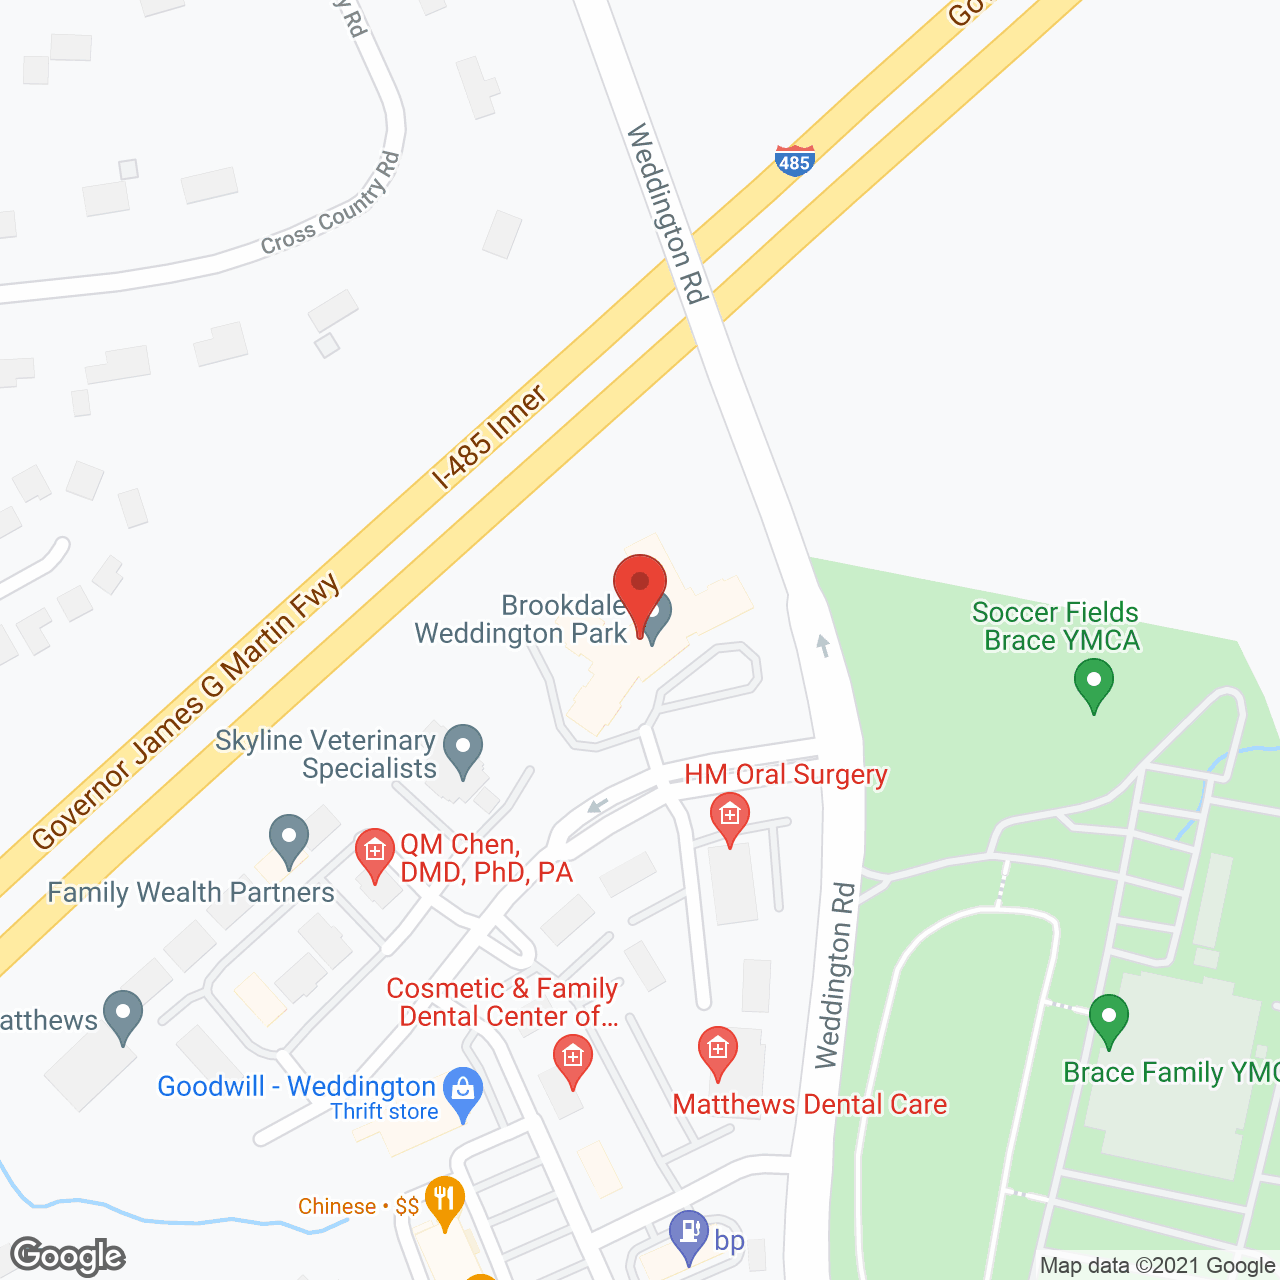 Brookdale Weddington Park in google map